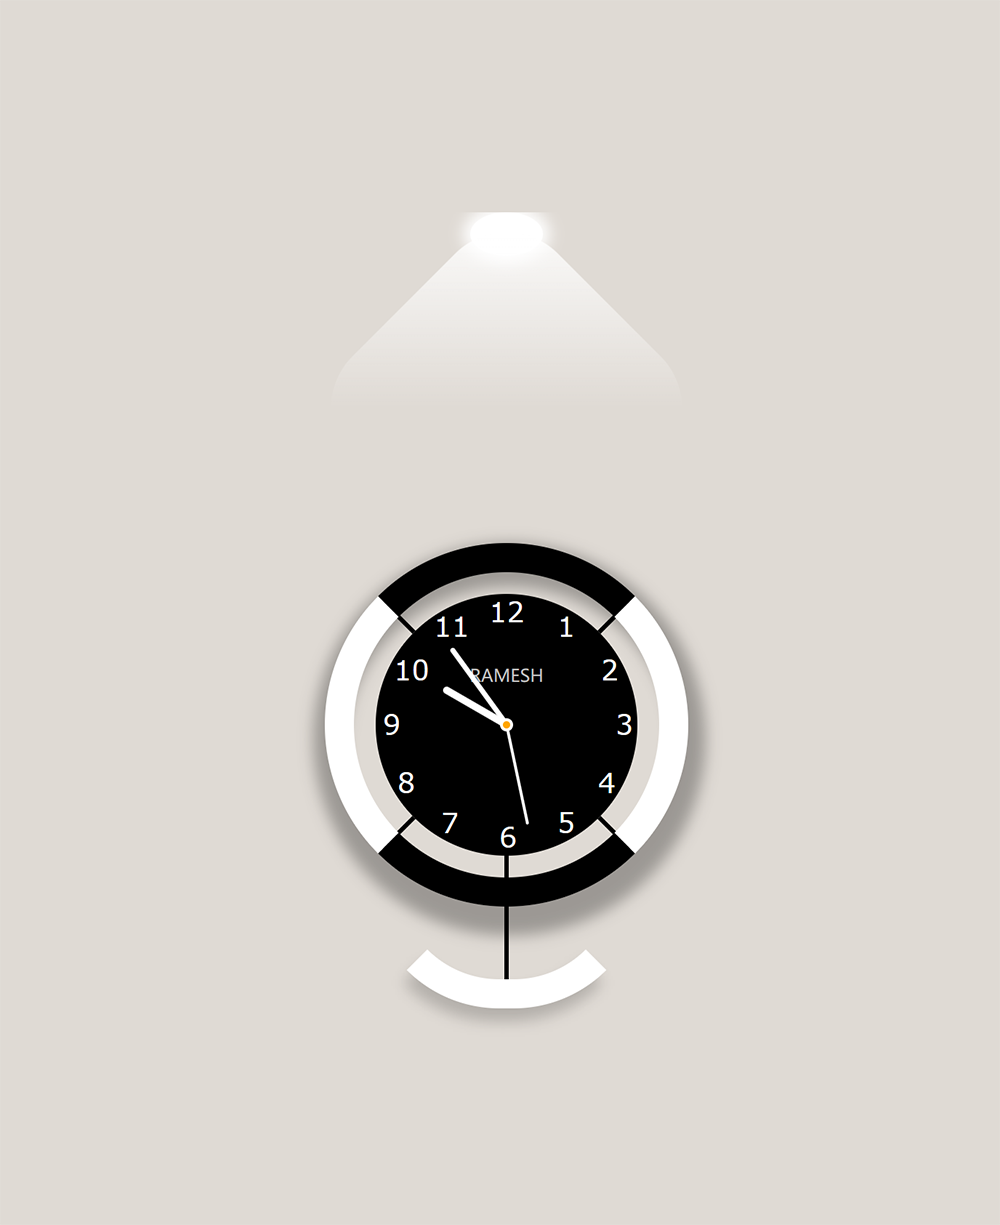 模拟摆钟造型的简洁网页时钟动画特效